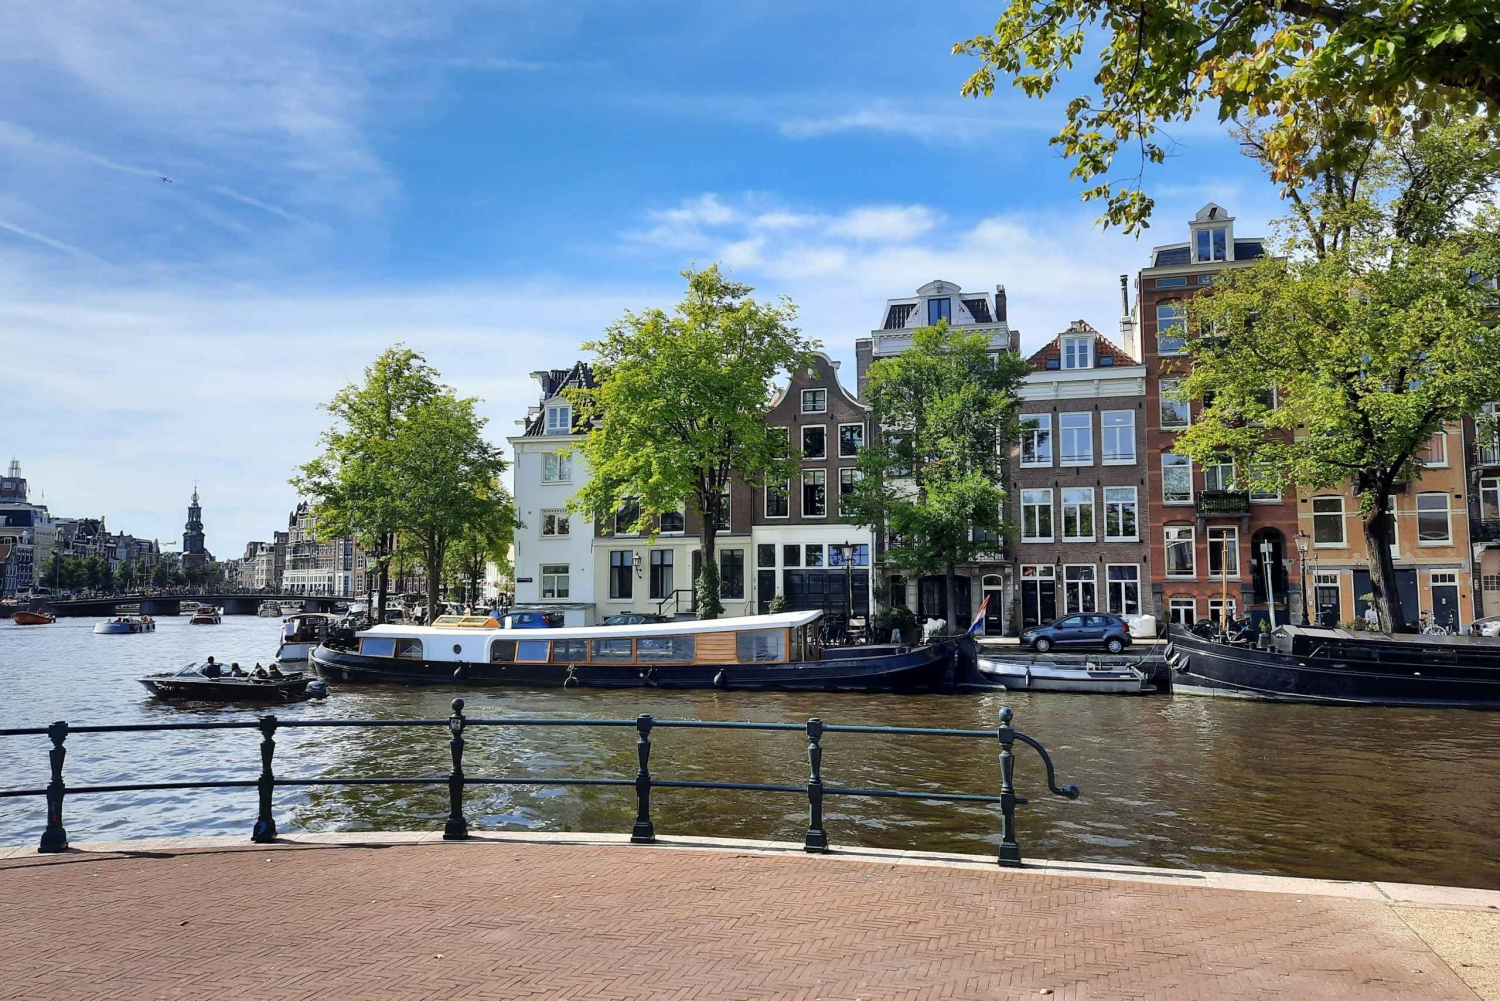 Rondleiding met gids in de oude stad van Amsterdam